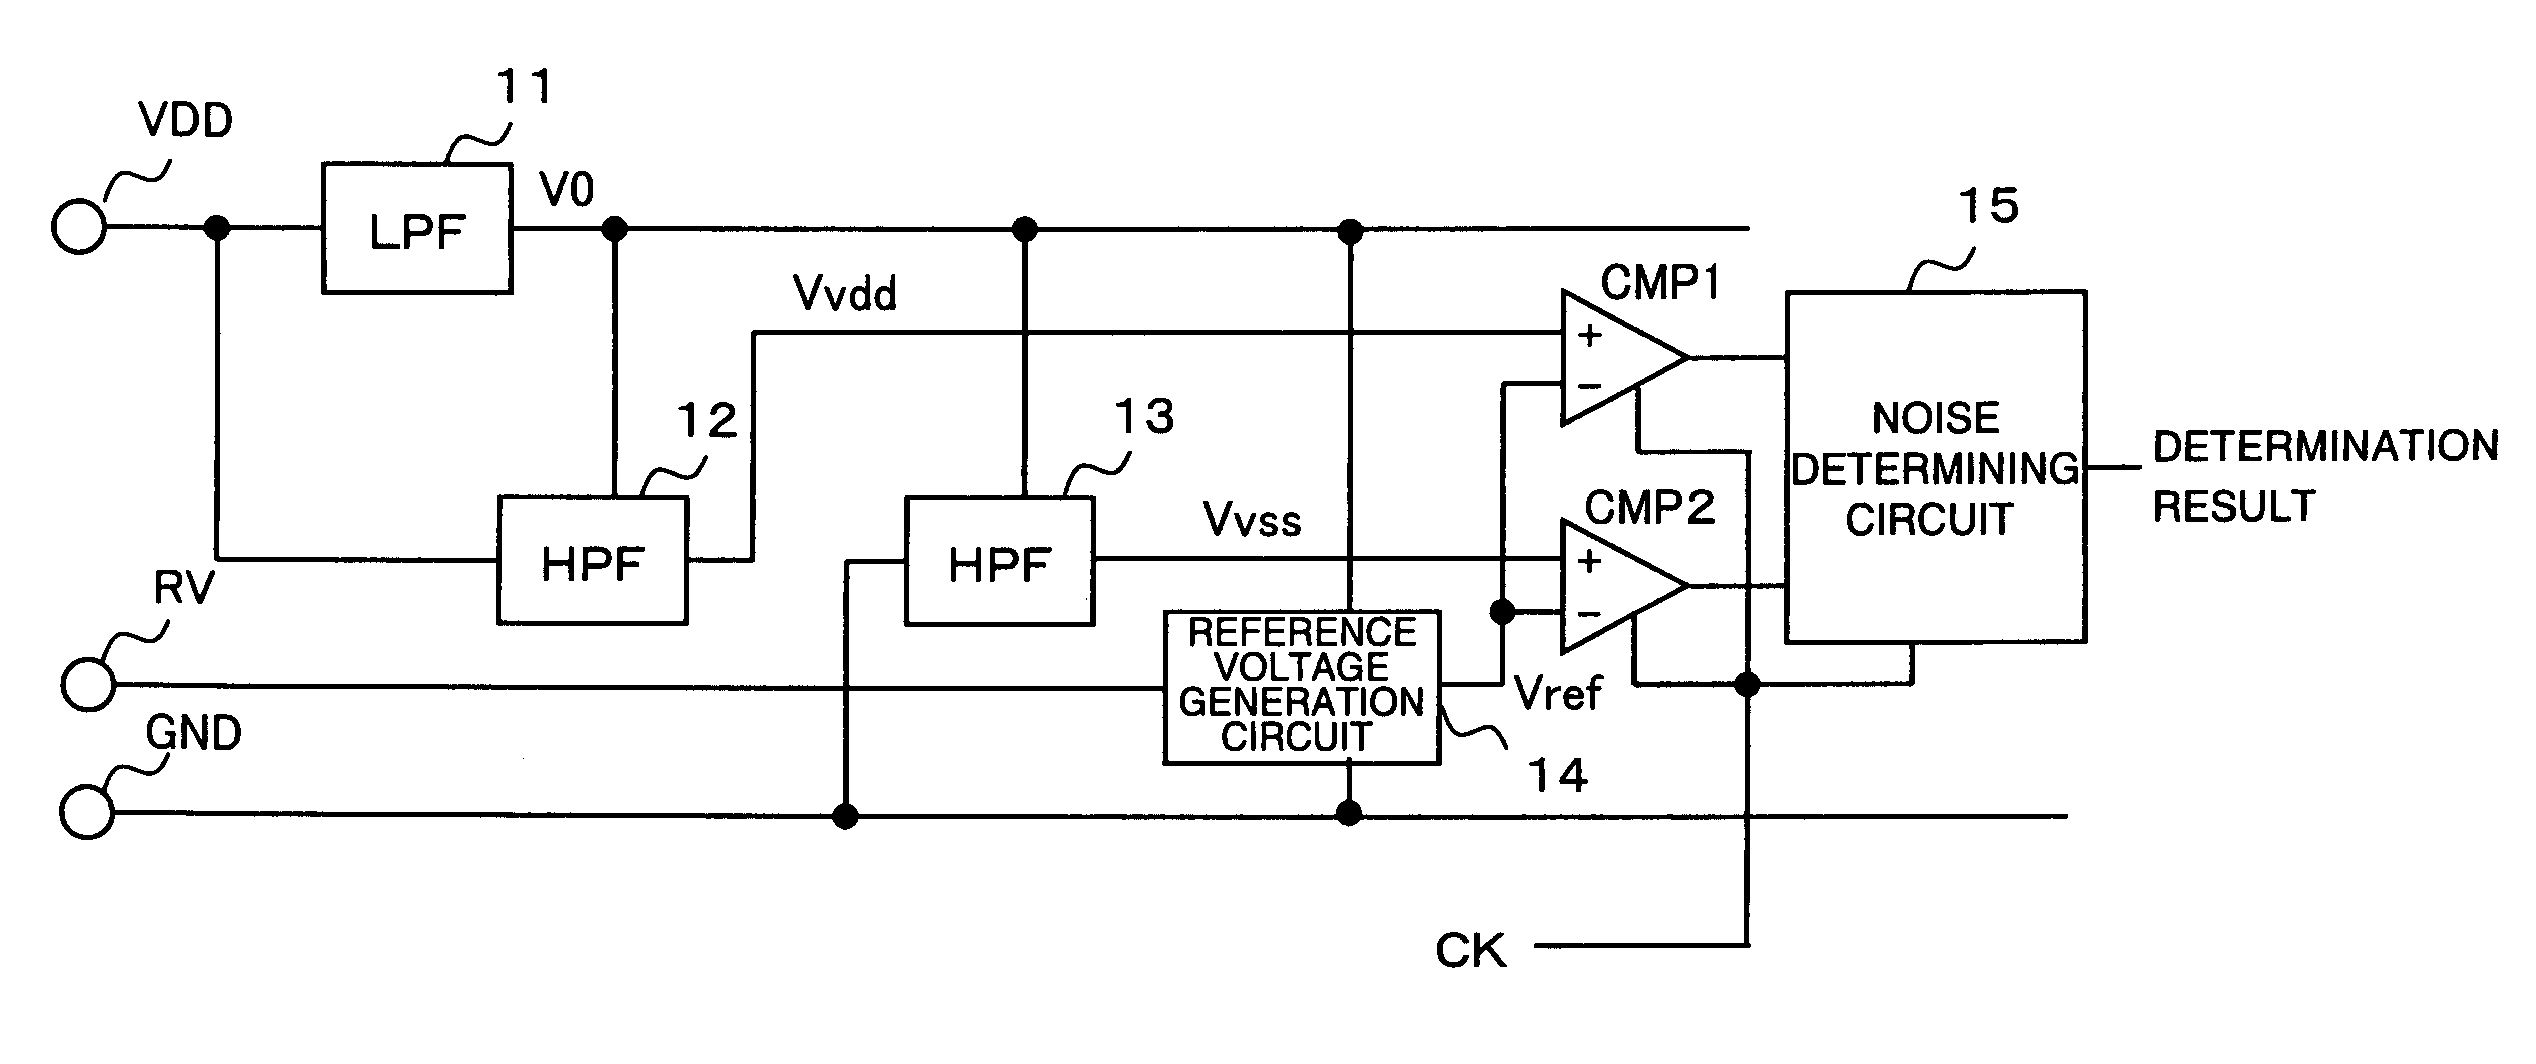 Noise detection circuit